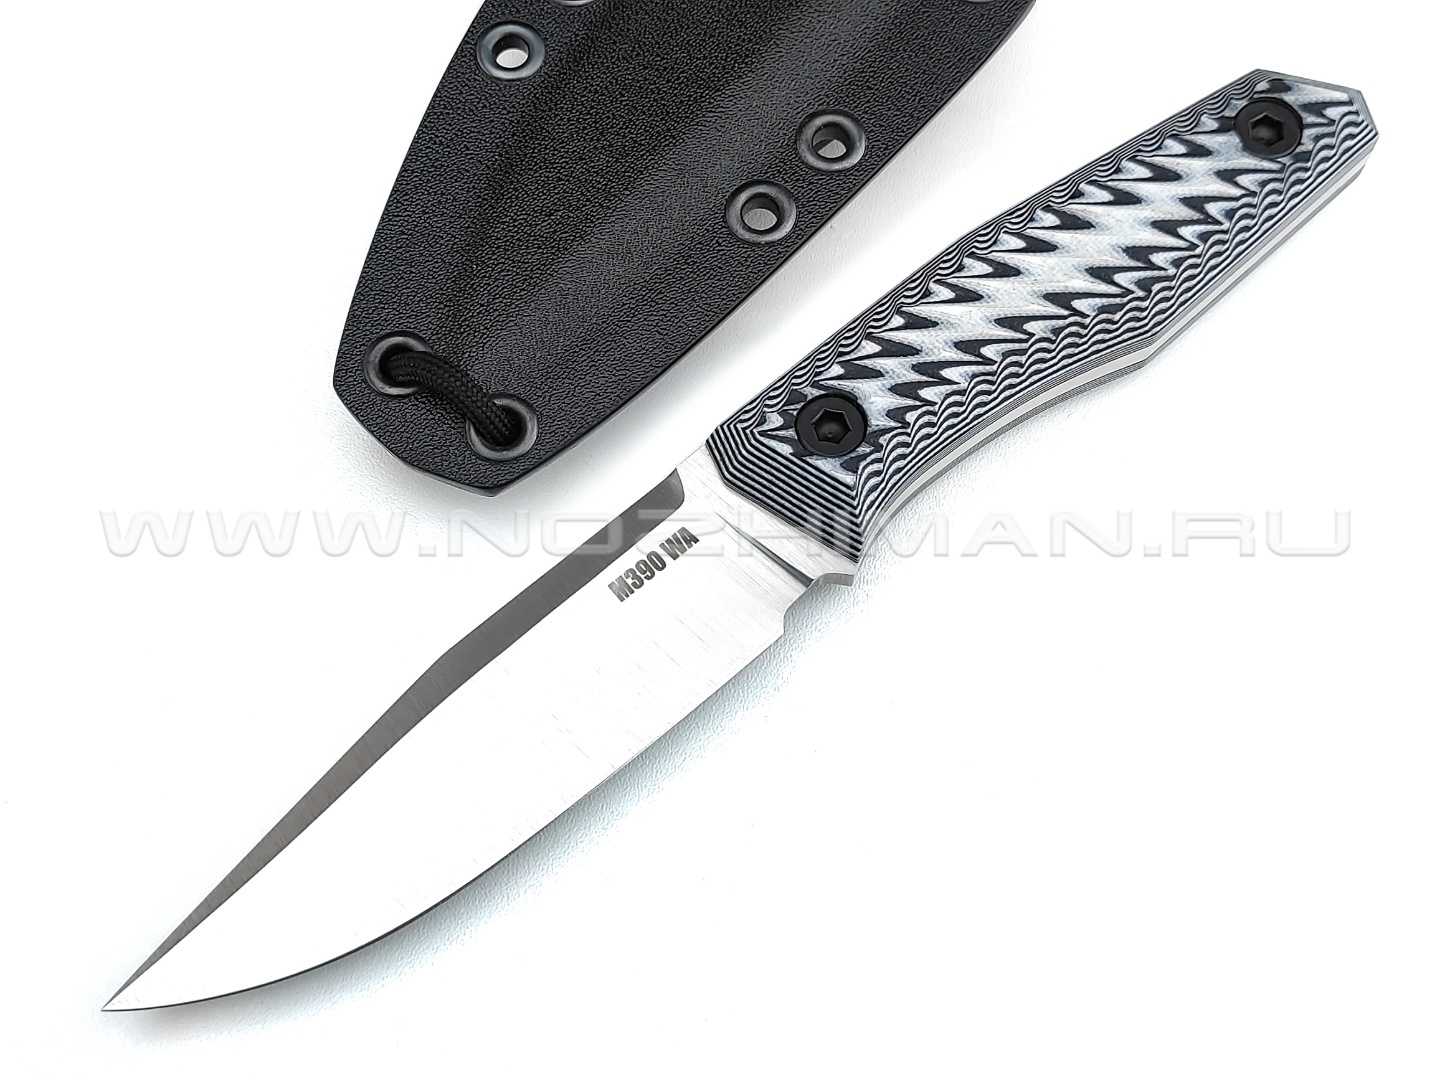 Волчий Век нож "BlackBird" сталь M390 WA, рукоять G10 black & white